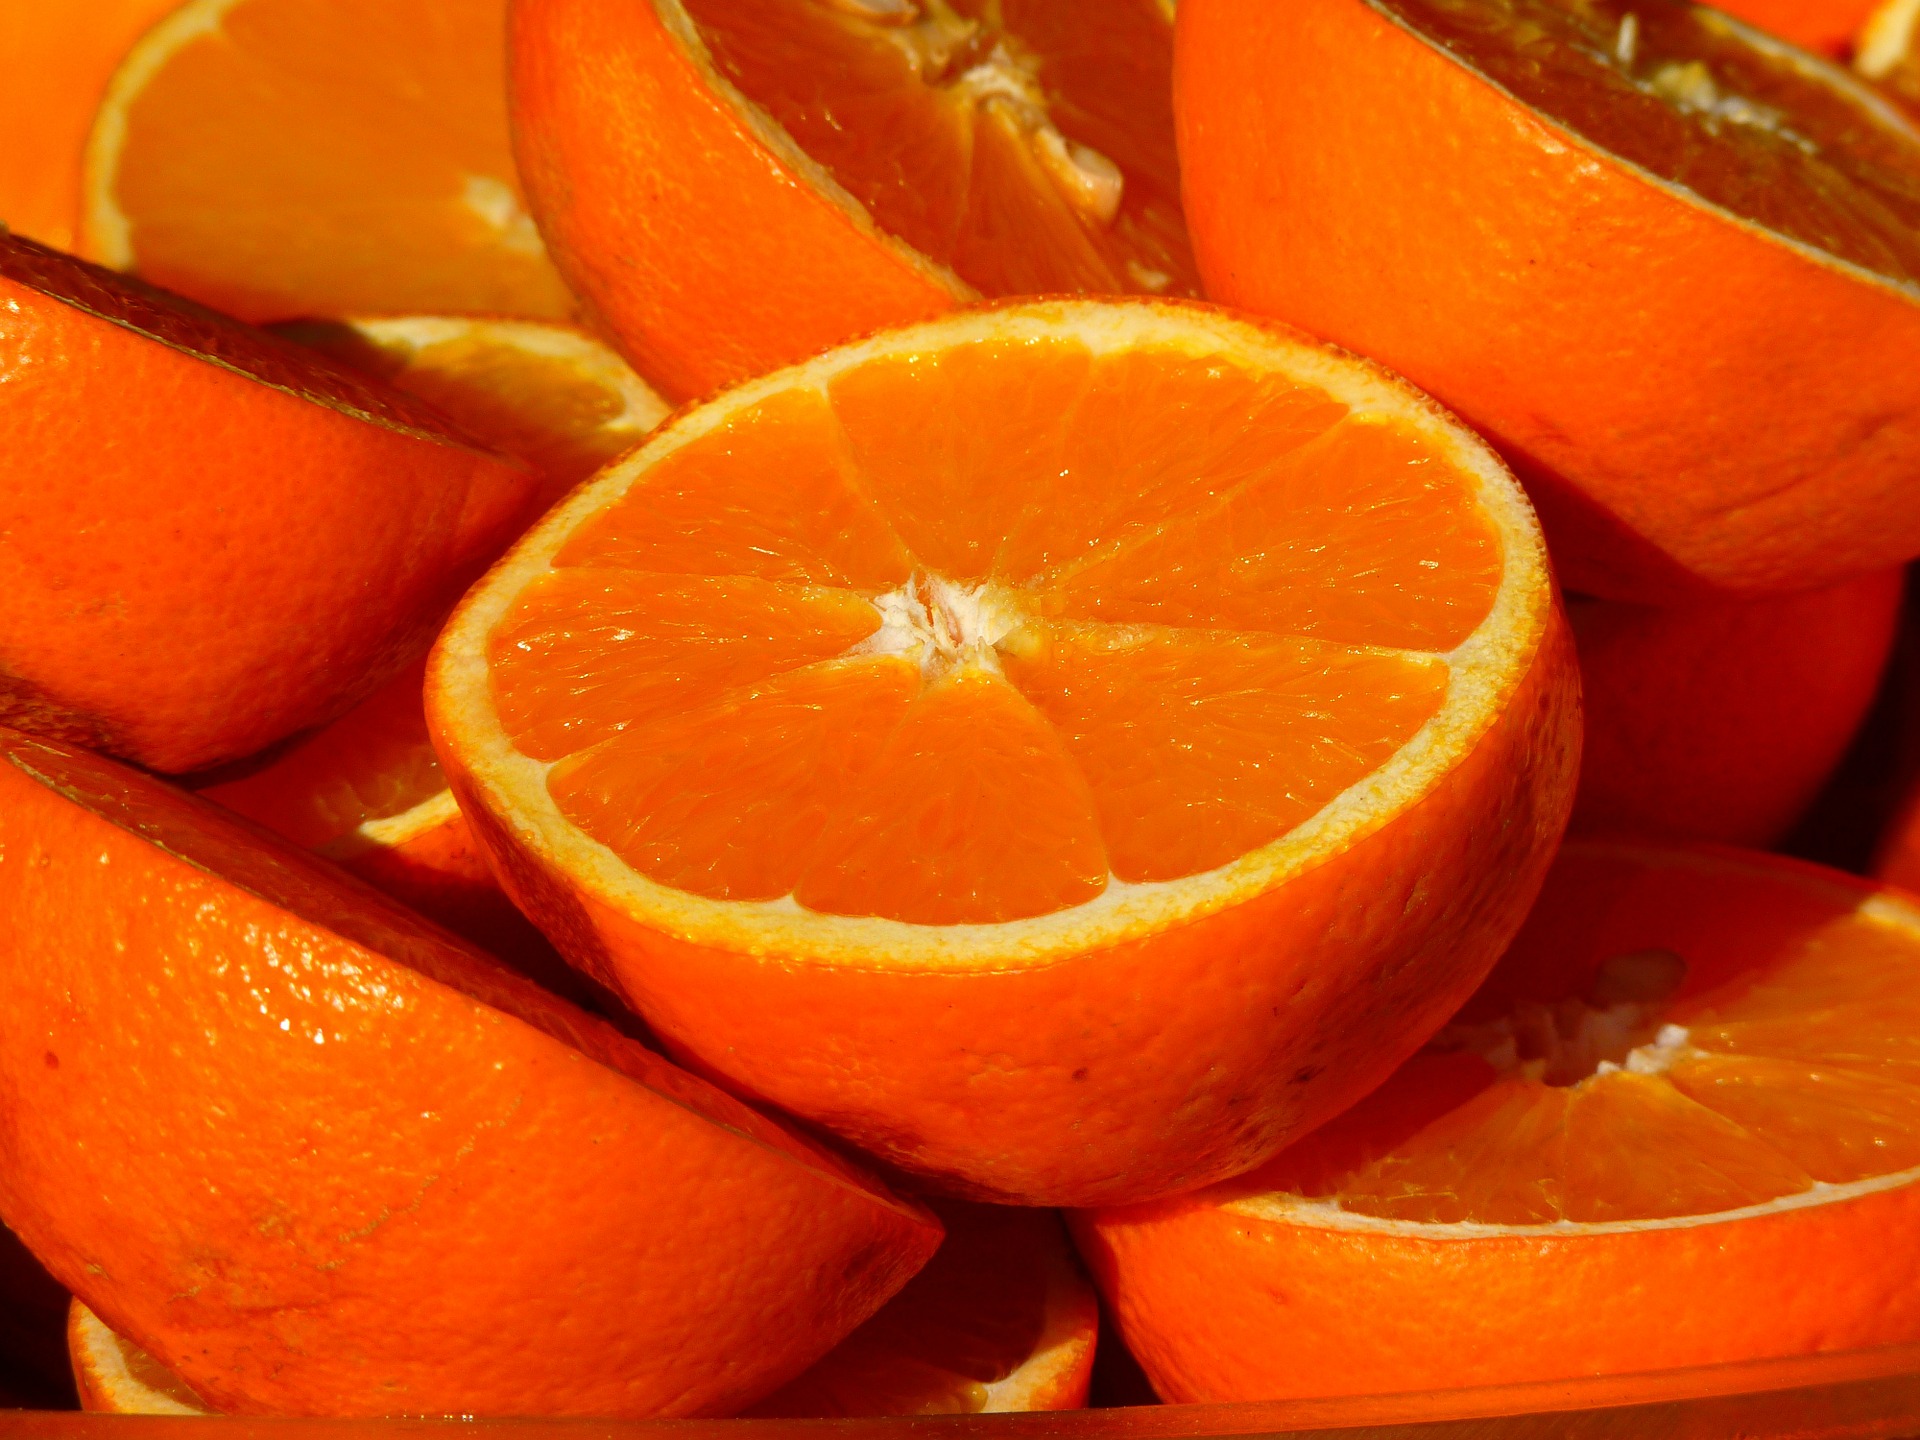 Citros/Cepea: Oferta restrita e demanda firme mantém preços da laranja em alta